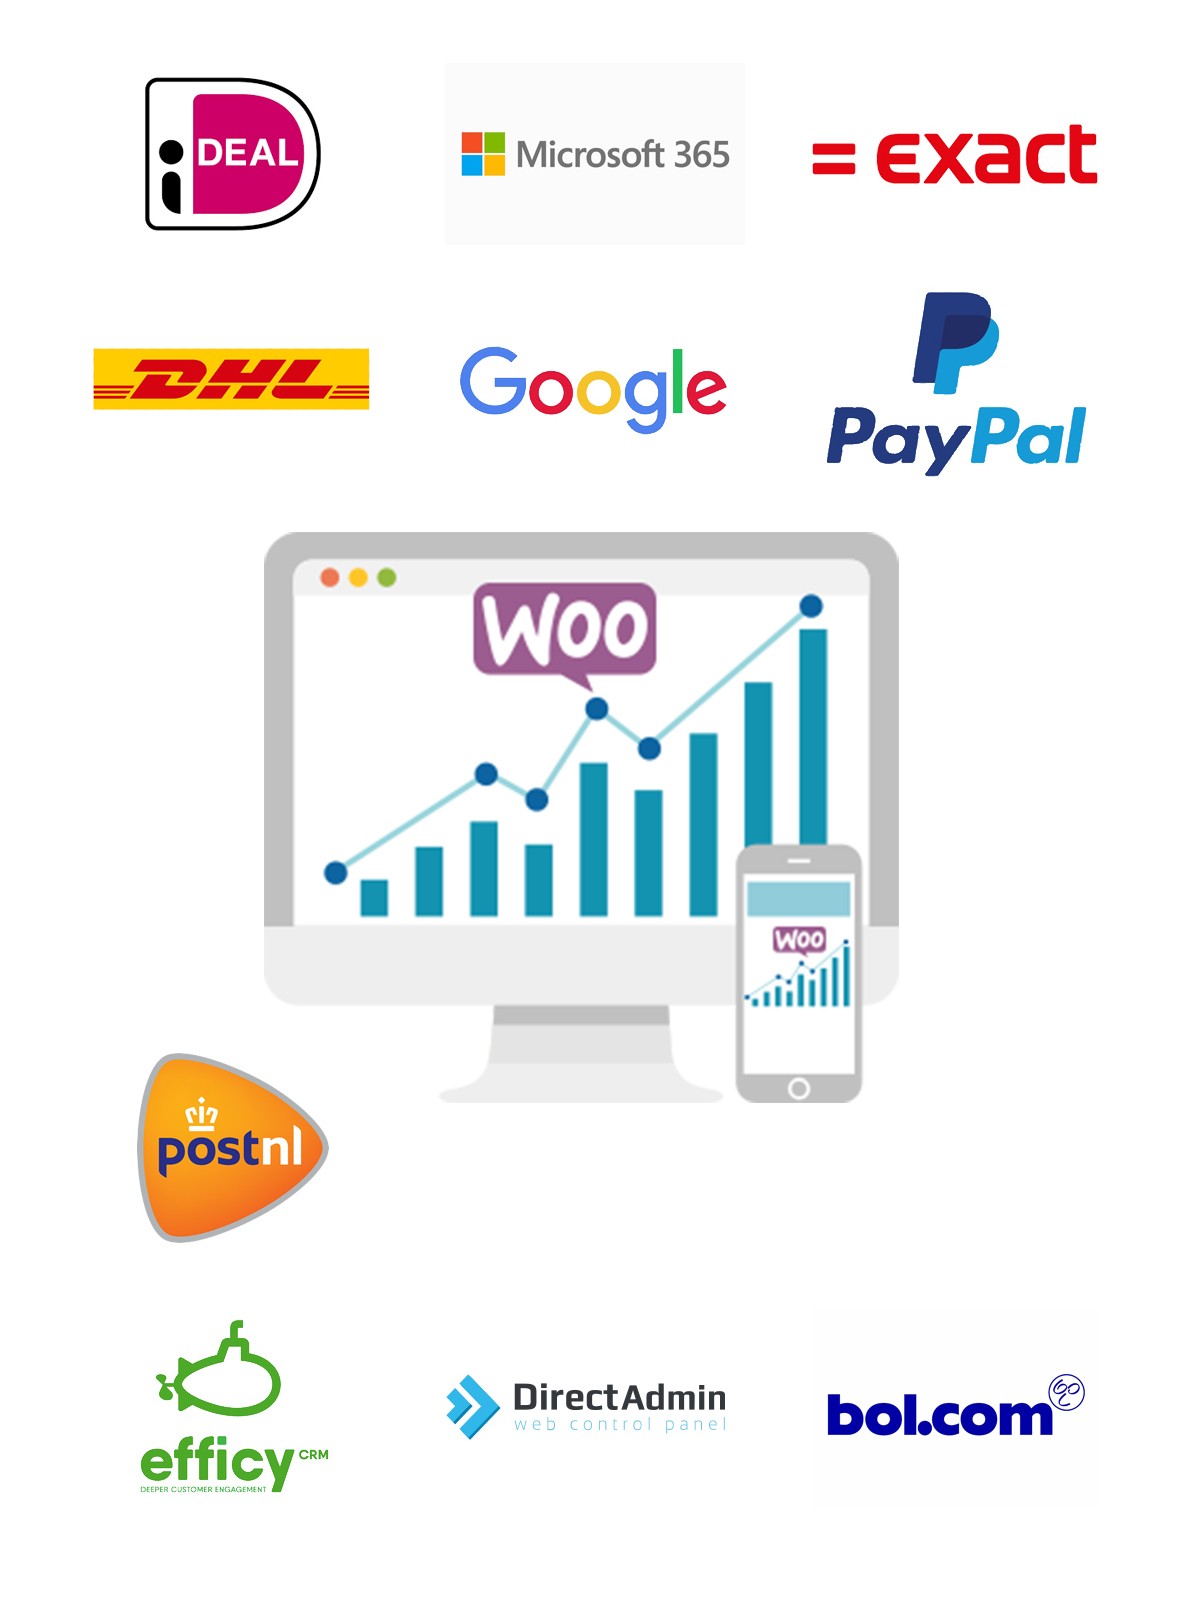 Koppel uw webshop van Woocommerce aan Exact, Unit4, Visma, AFAS, iDeal, PayPal, DHL, UPS, GLS, PostNL, DPD, Mastercard, Visa, American Express en Soft banking om maar wat voorbeelden te noemen.